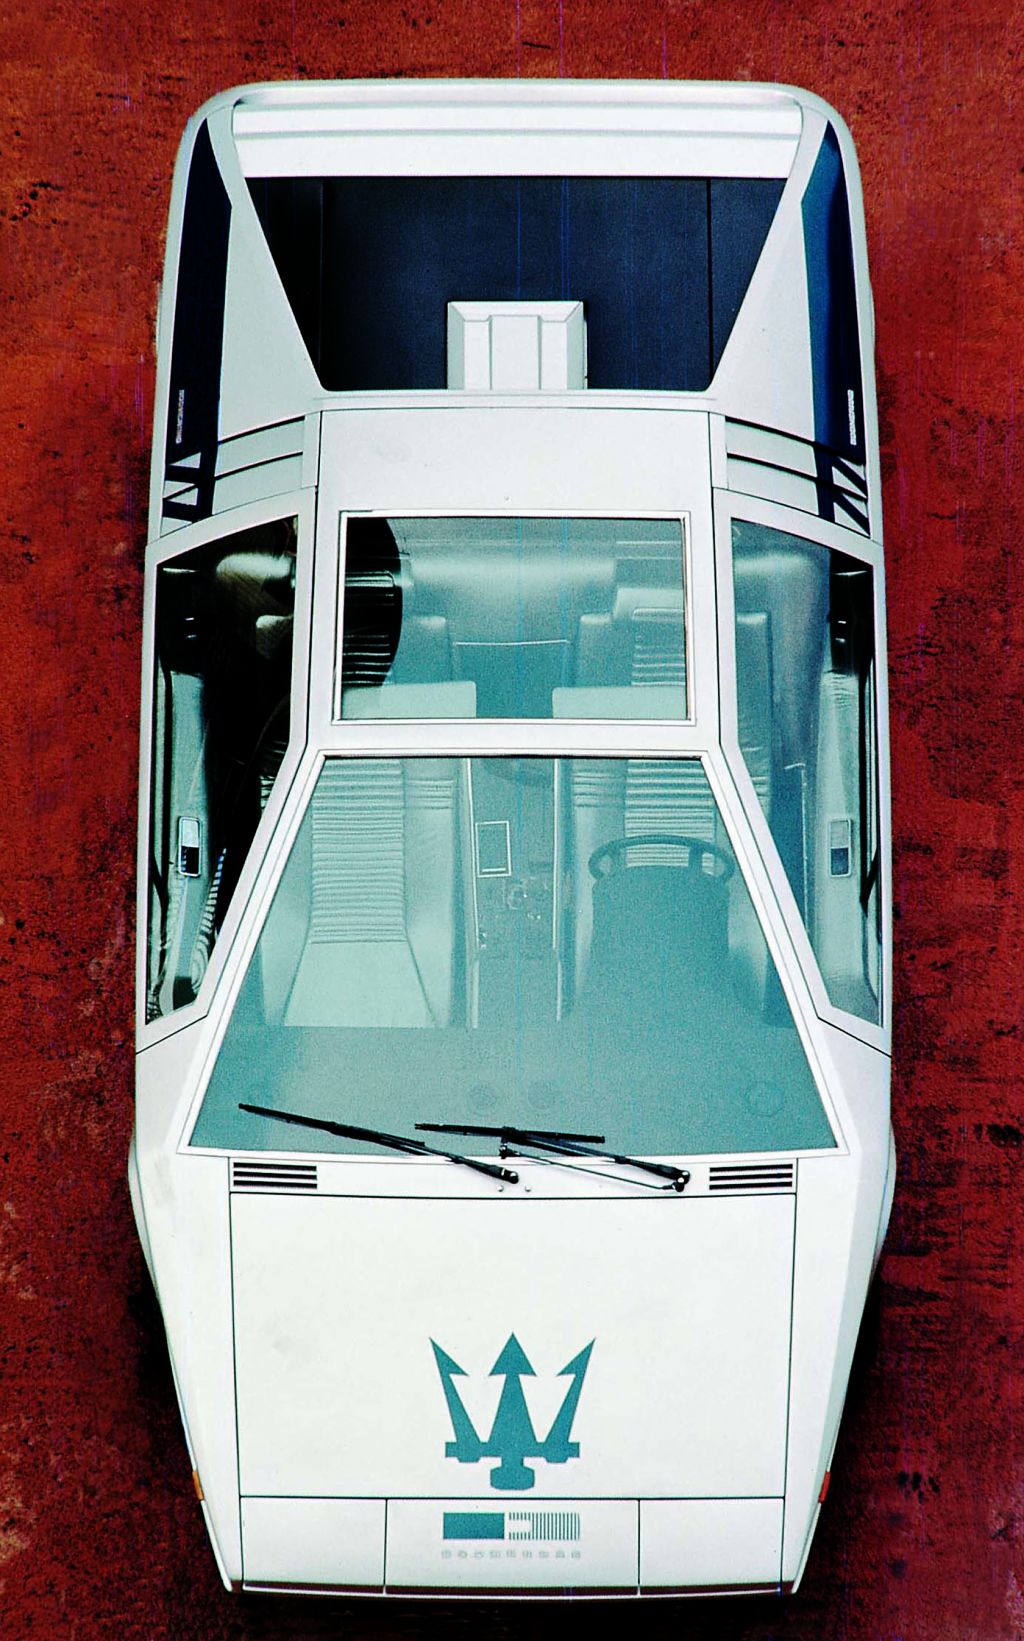 MASERATI BOOMERANG Concept concept-car 1972